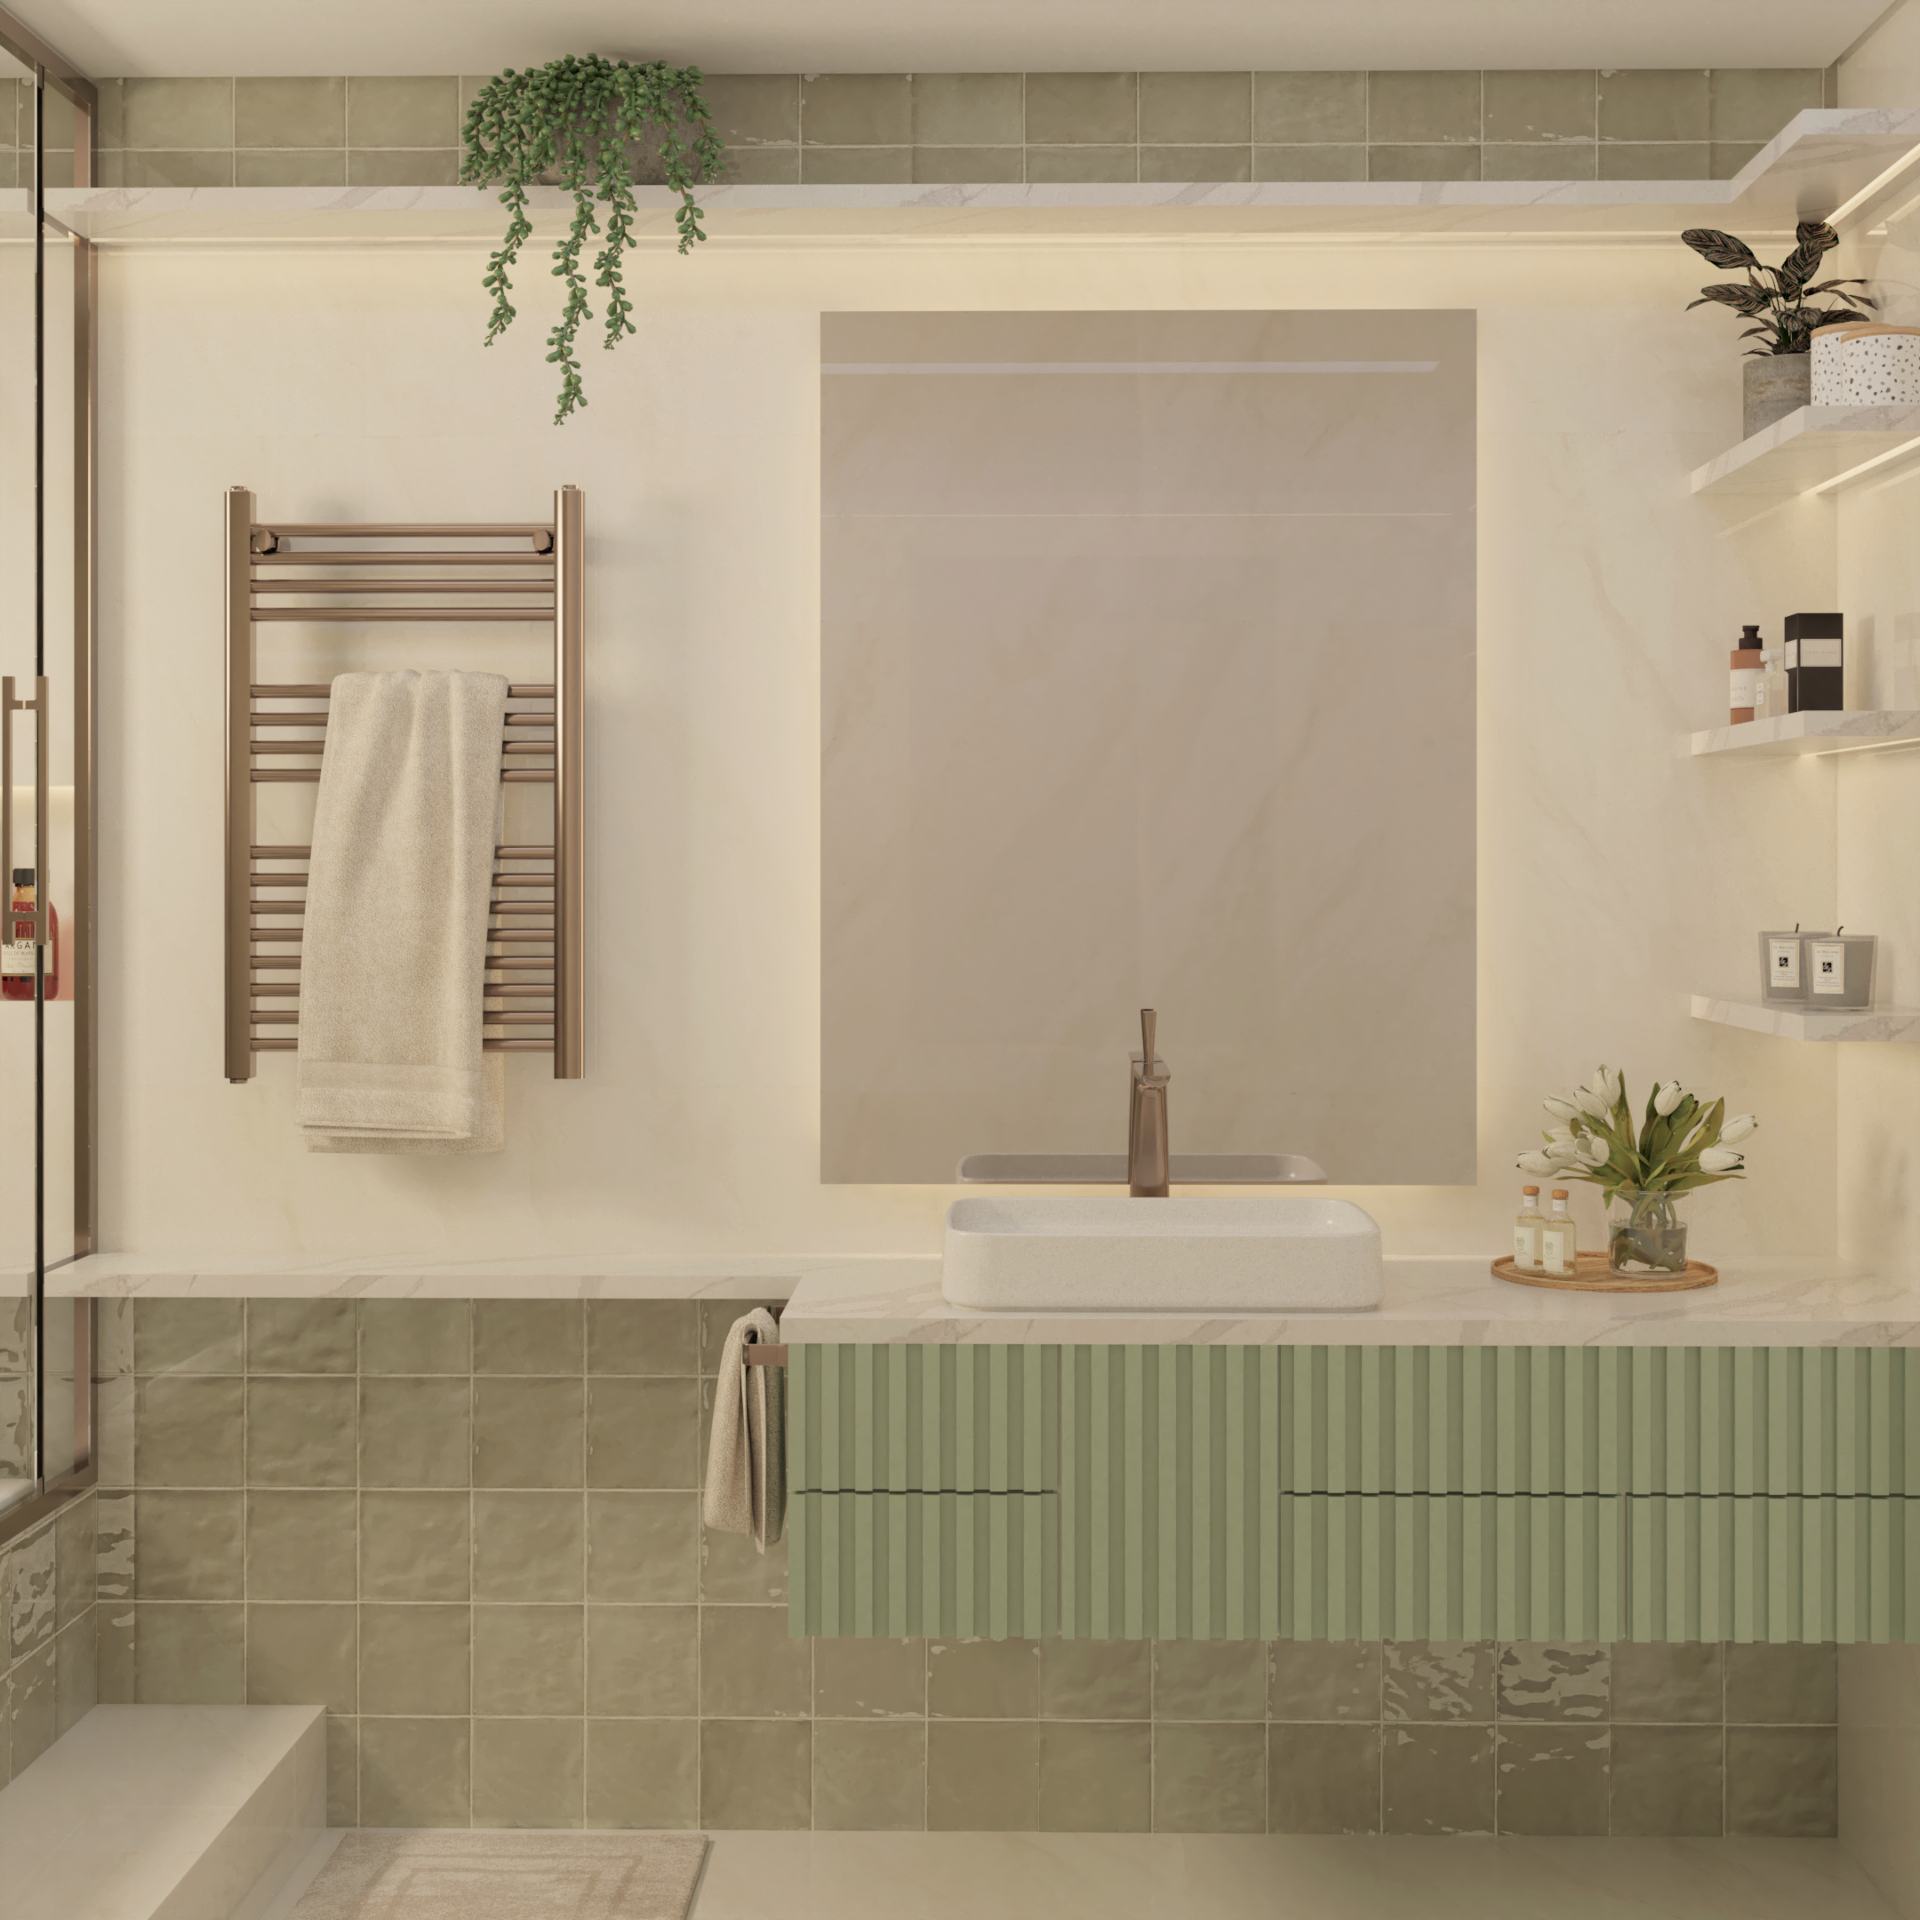 Banheiro aconchegante com revestimento e marcenaria em verde